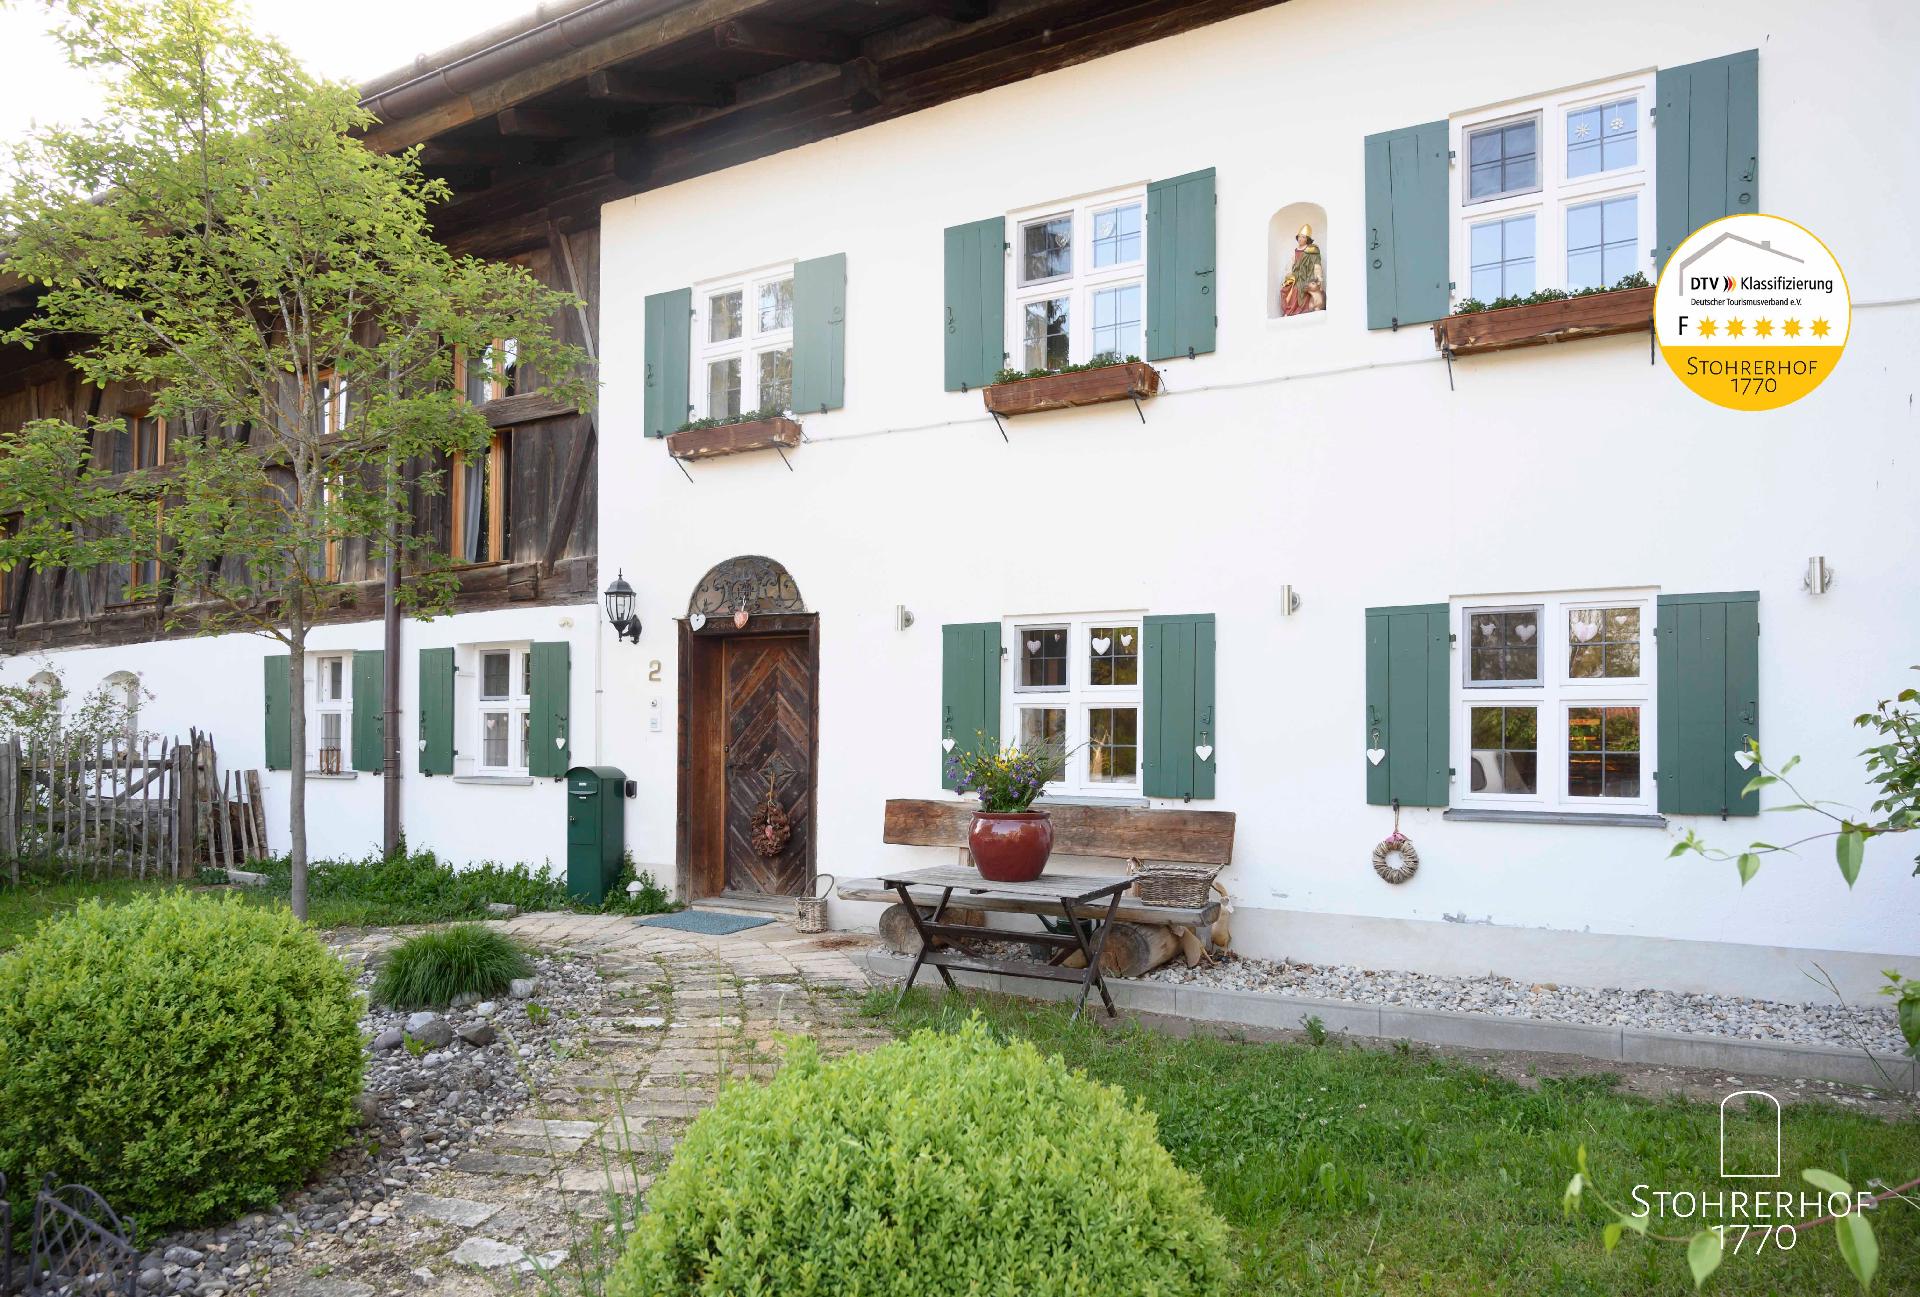 Wunderschönes Ferienhaus in Riederau mit Offe Besondere Immobilie in Deutschland